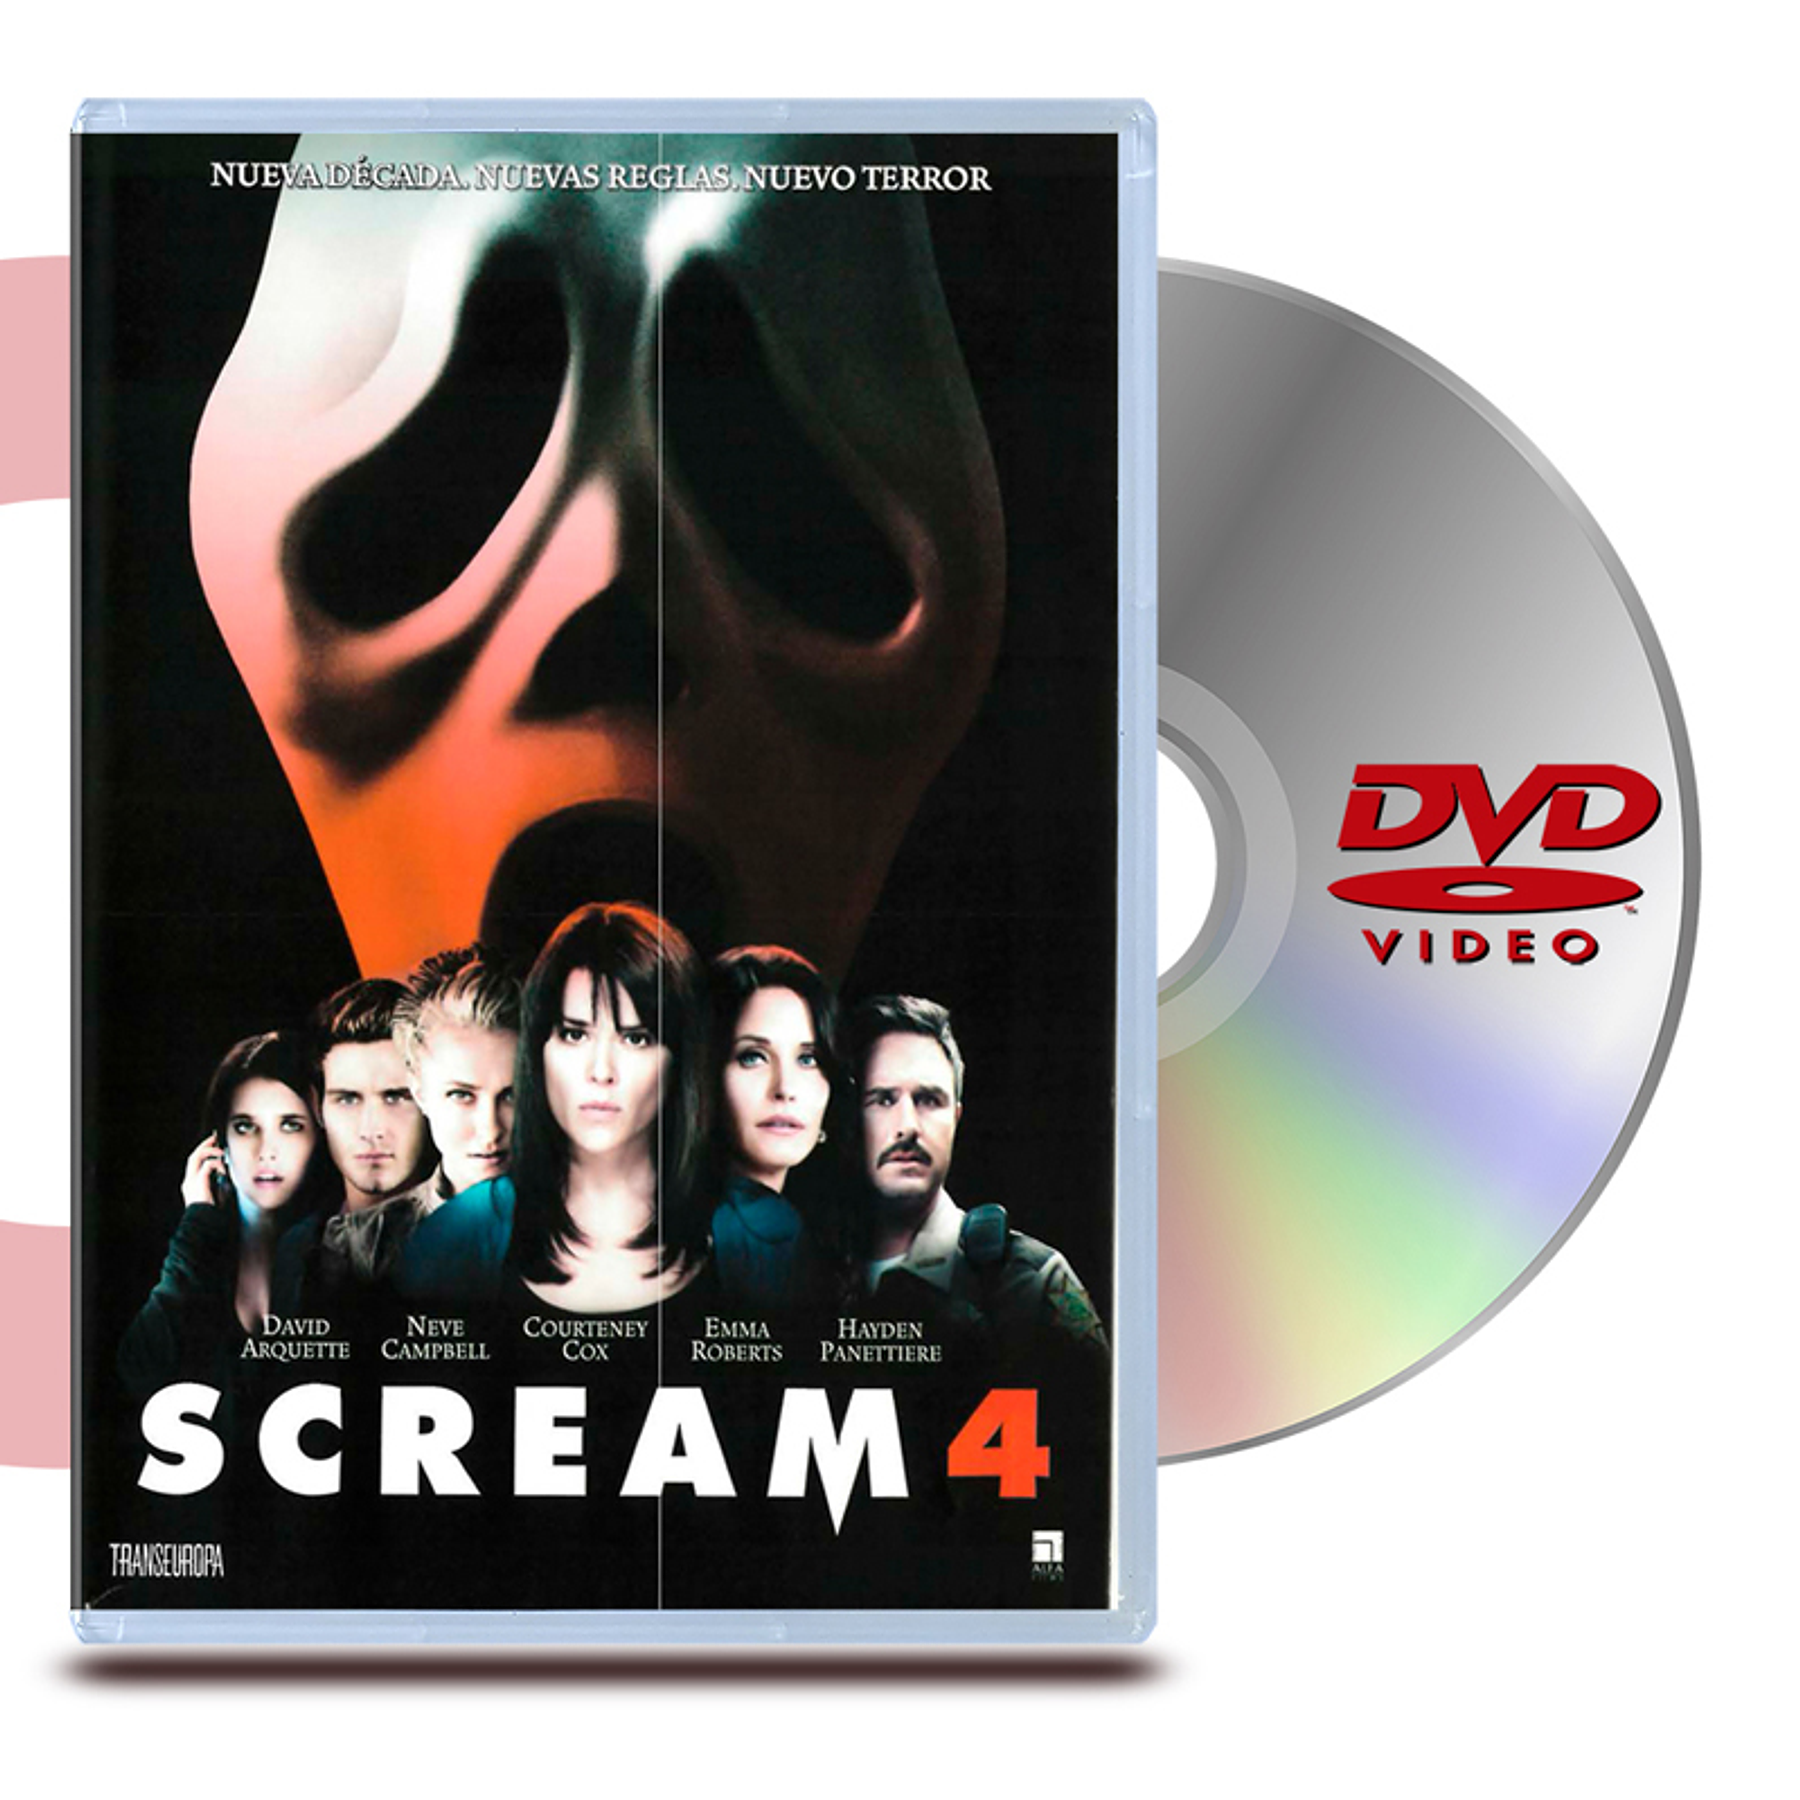 DVD SCREAM 4